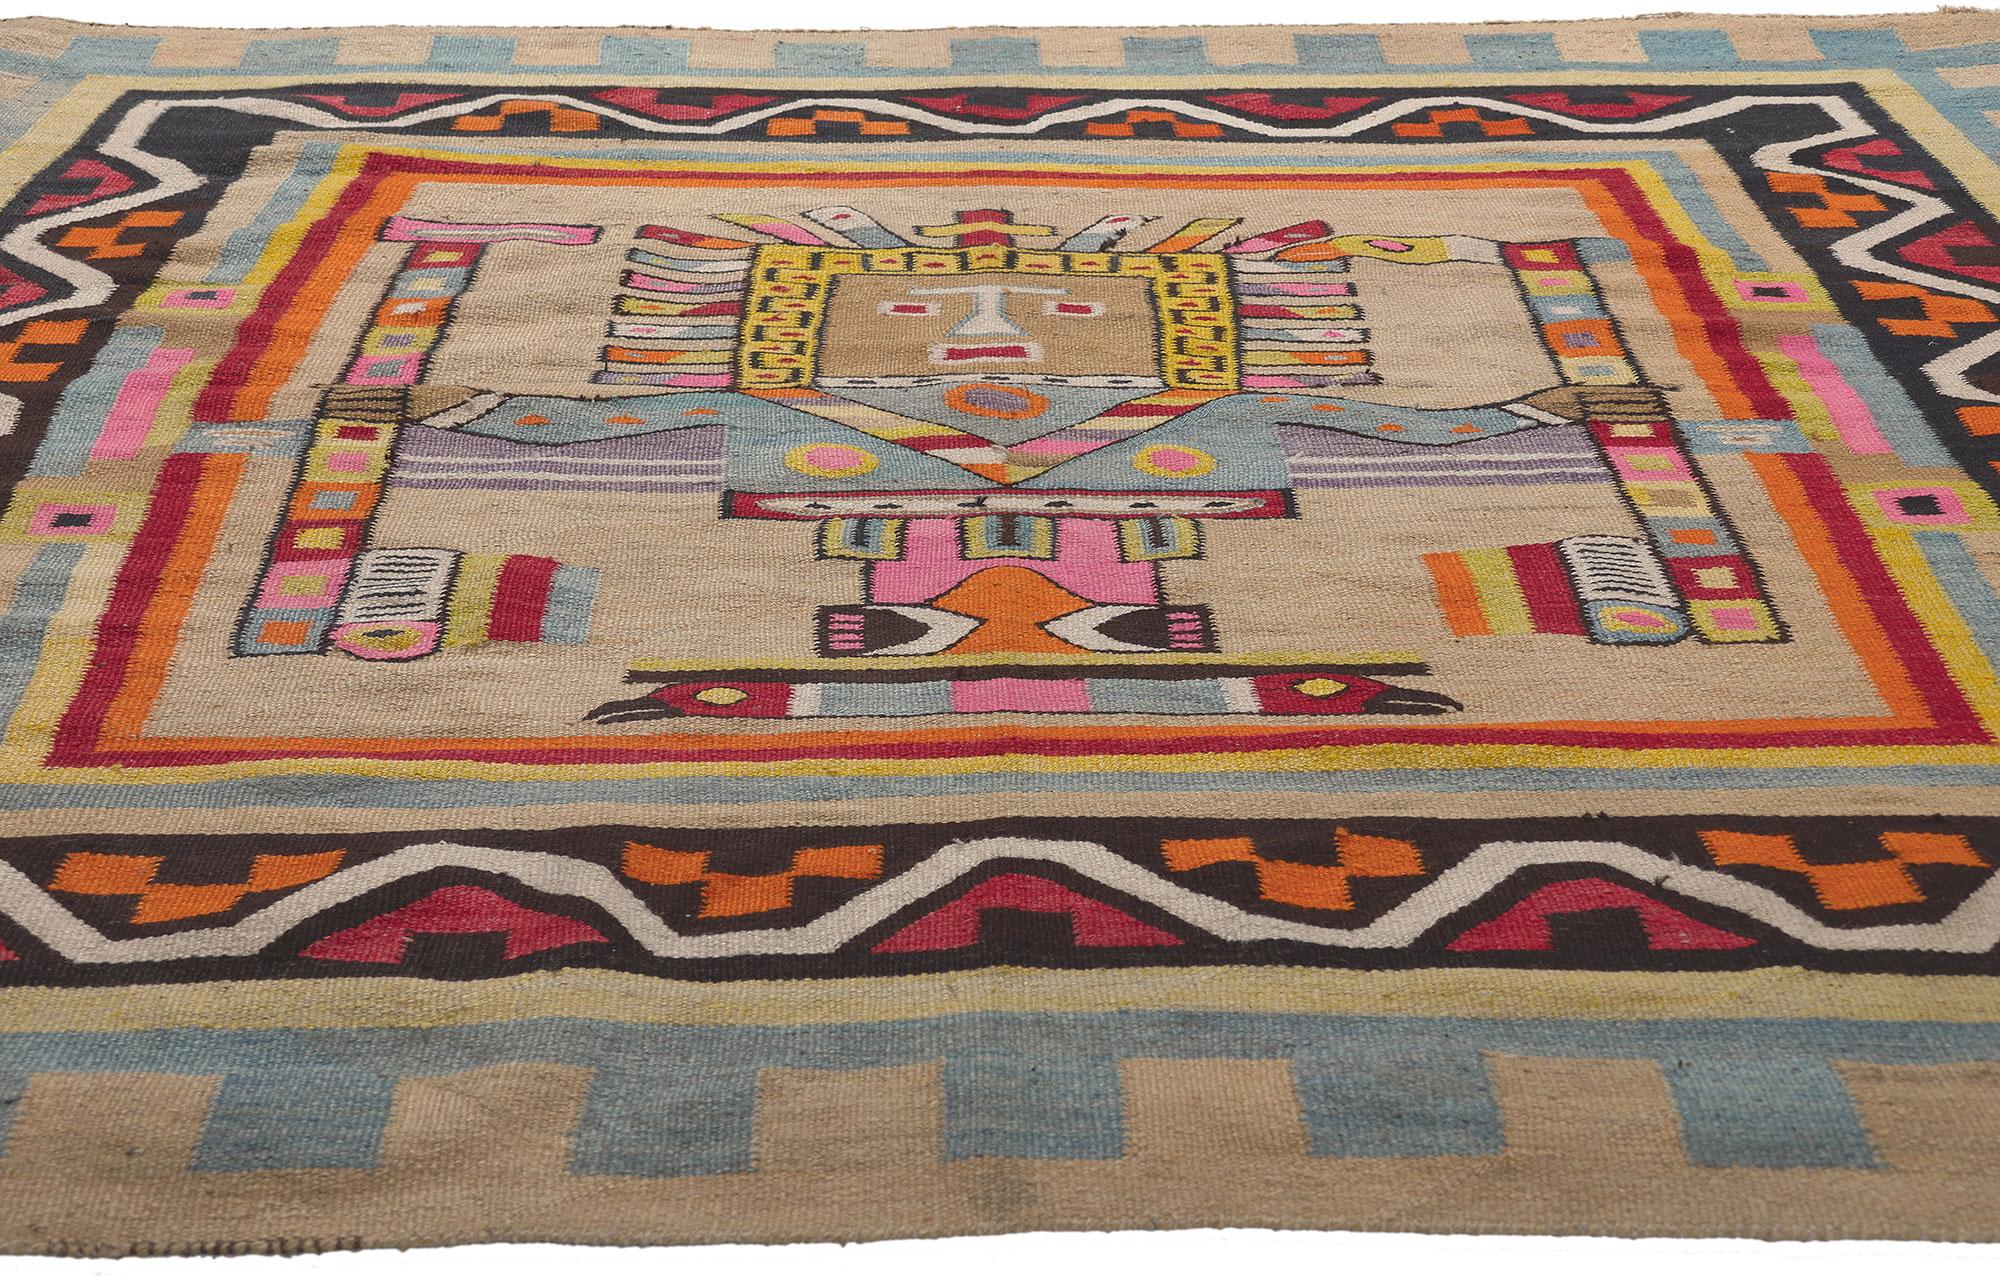 Précolombien Tapis Kilim sud-américain vintage coloré avec divinité pré-incan Viracocha 